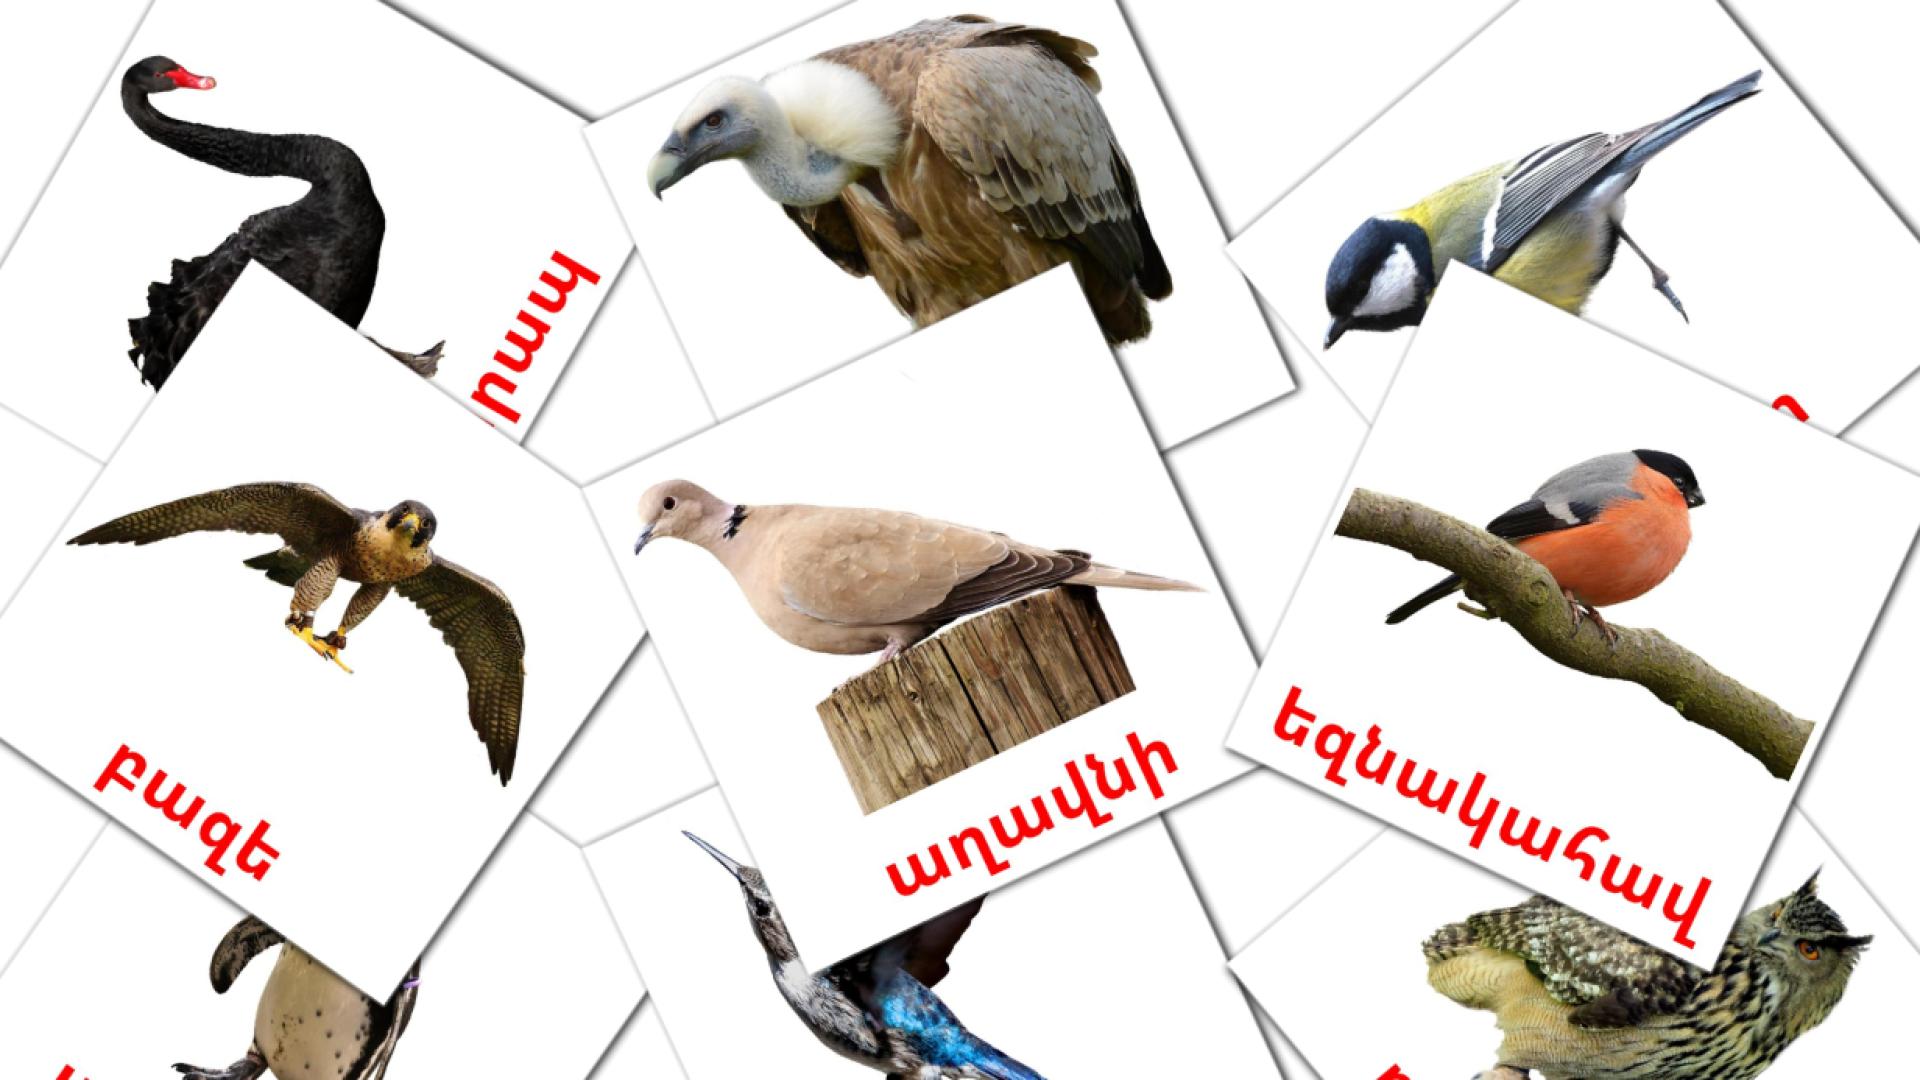 Pájaros salvajes - tarjetas de vocabulario en armenio